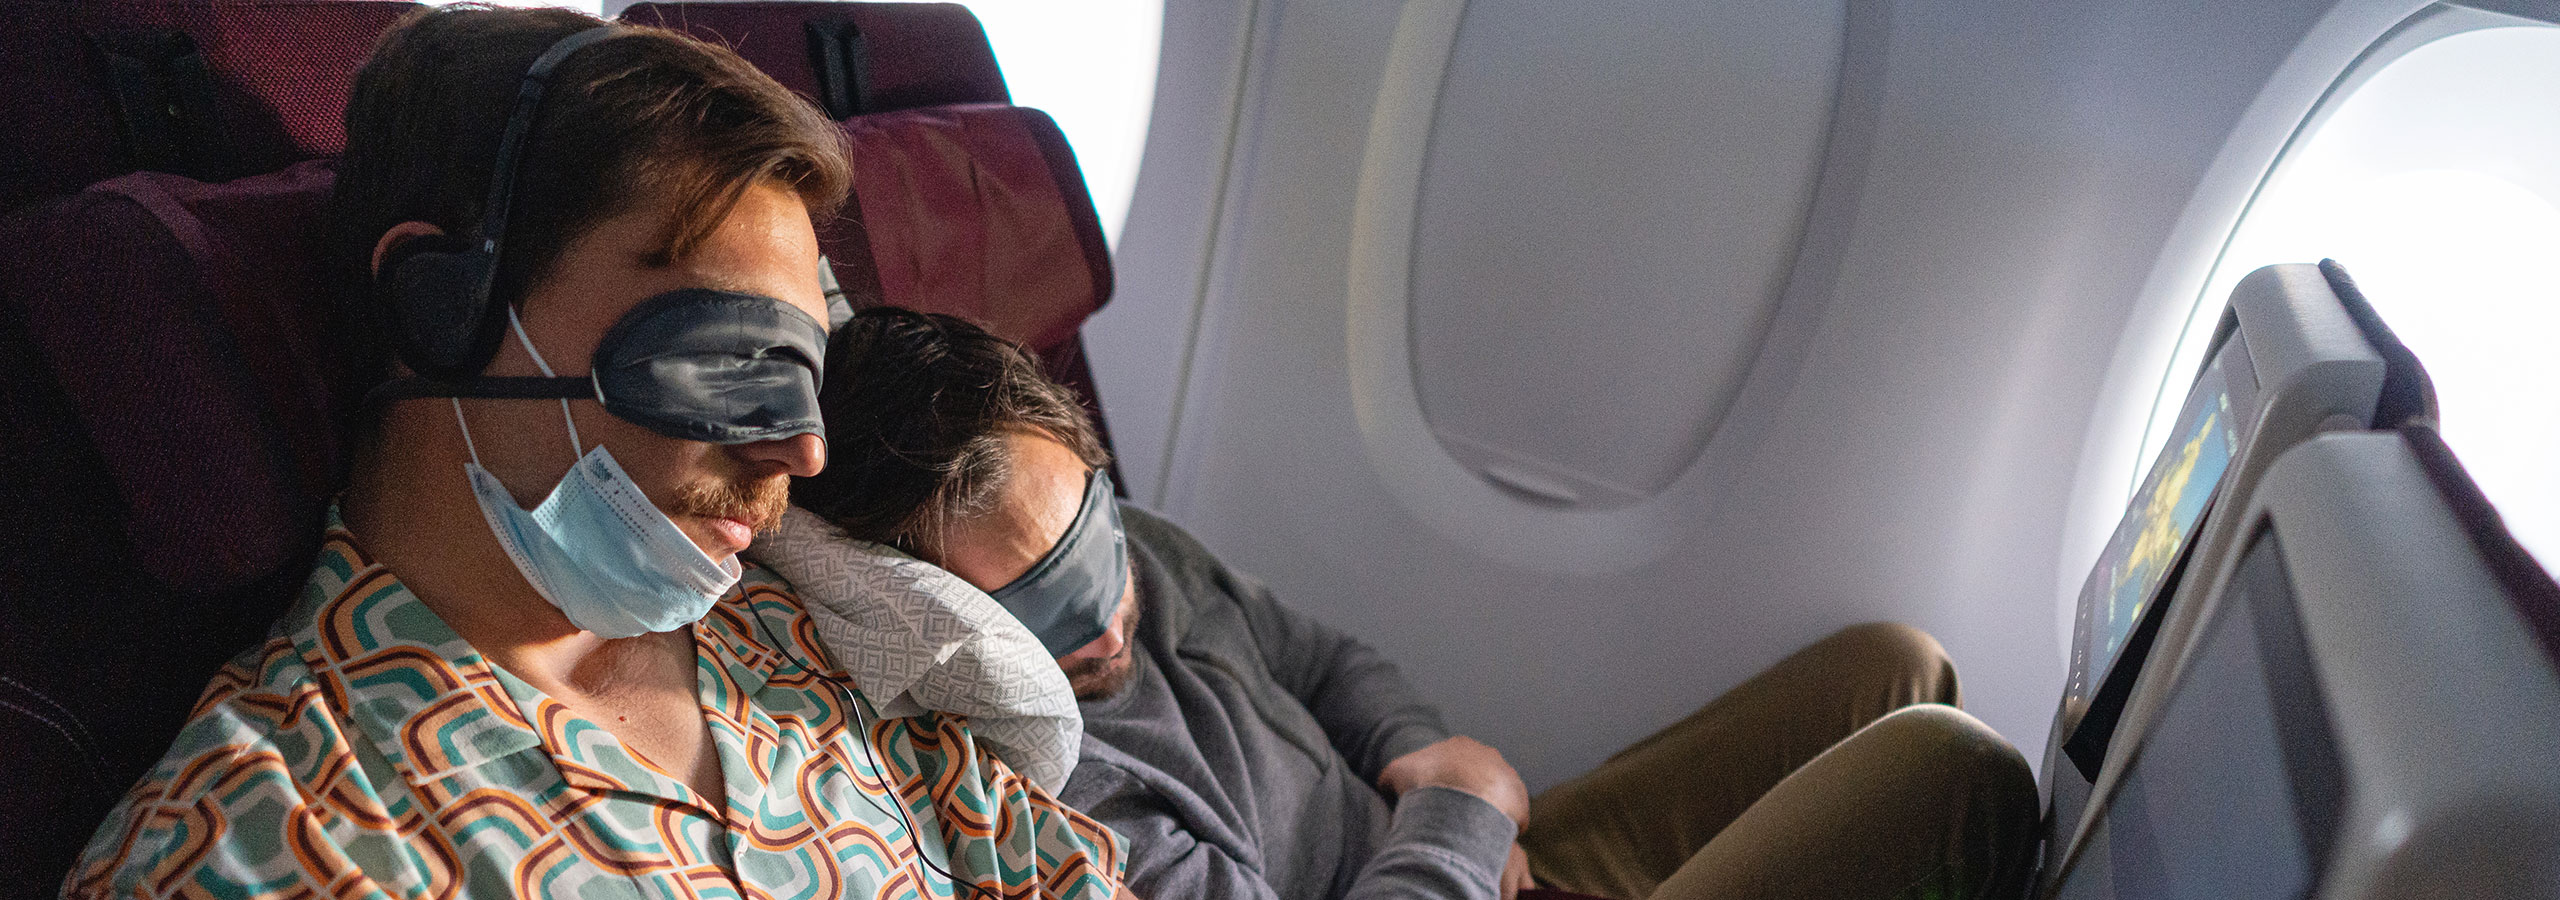 male friends sleeping in the flight